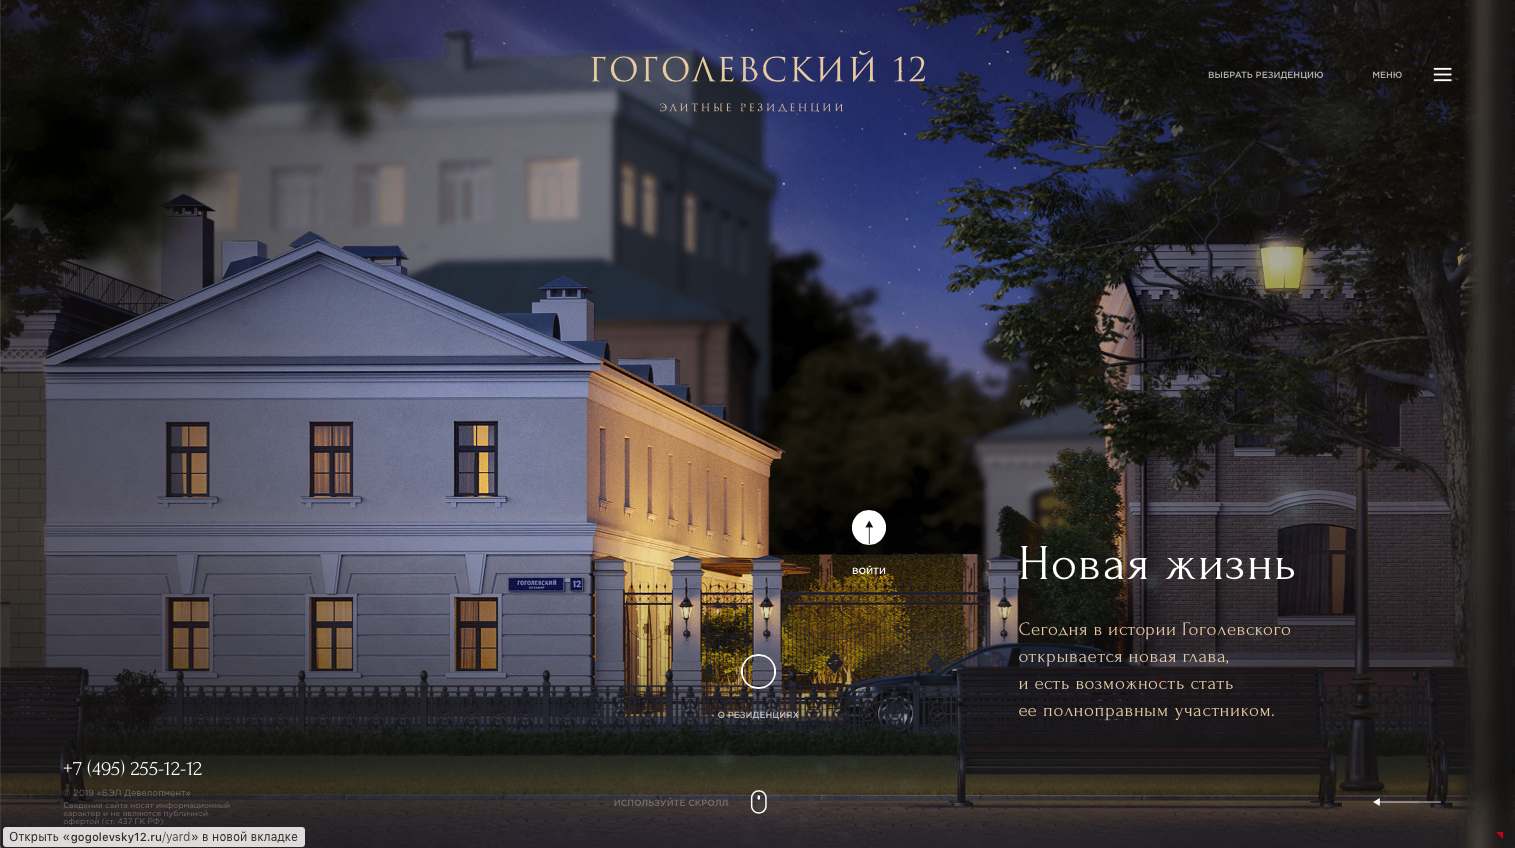 Гоголевский, 12 – редкая жемчужина в московской коллекции шедевров